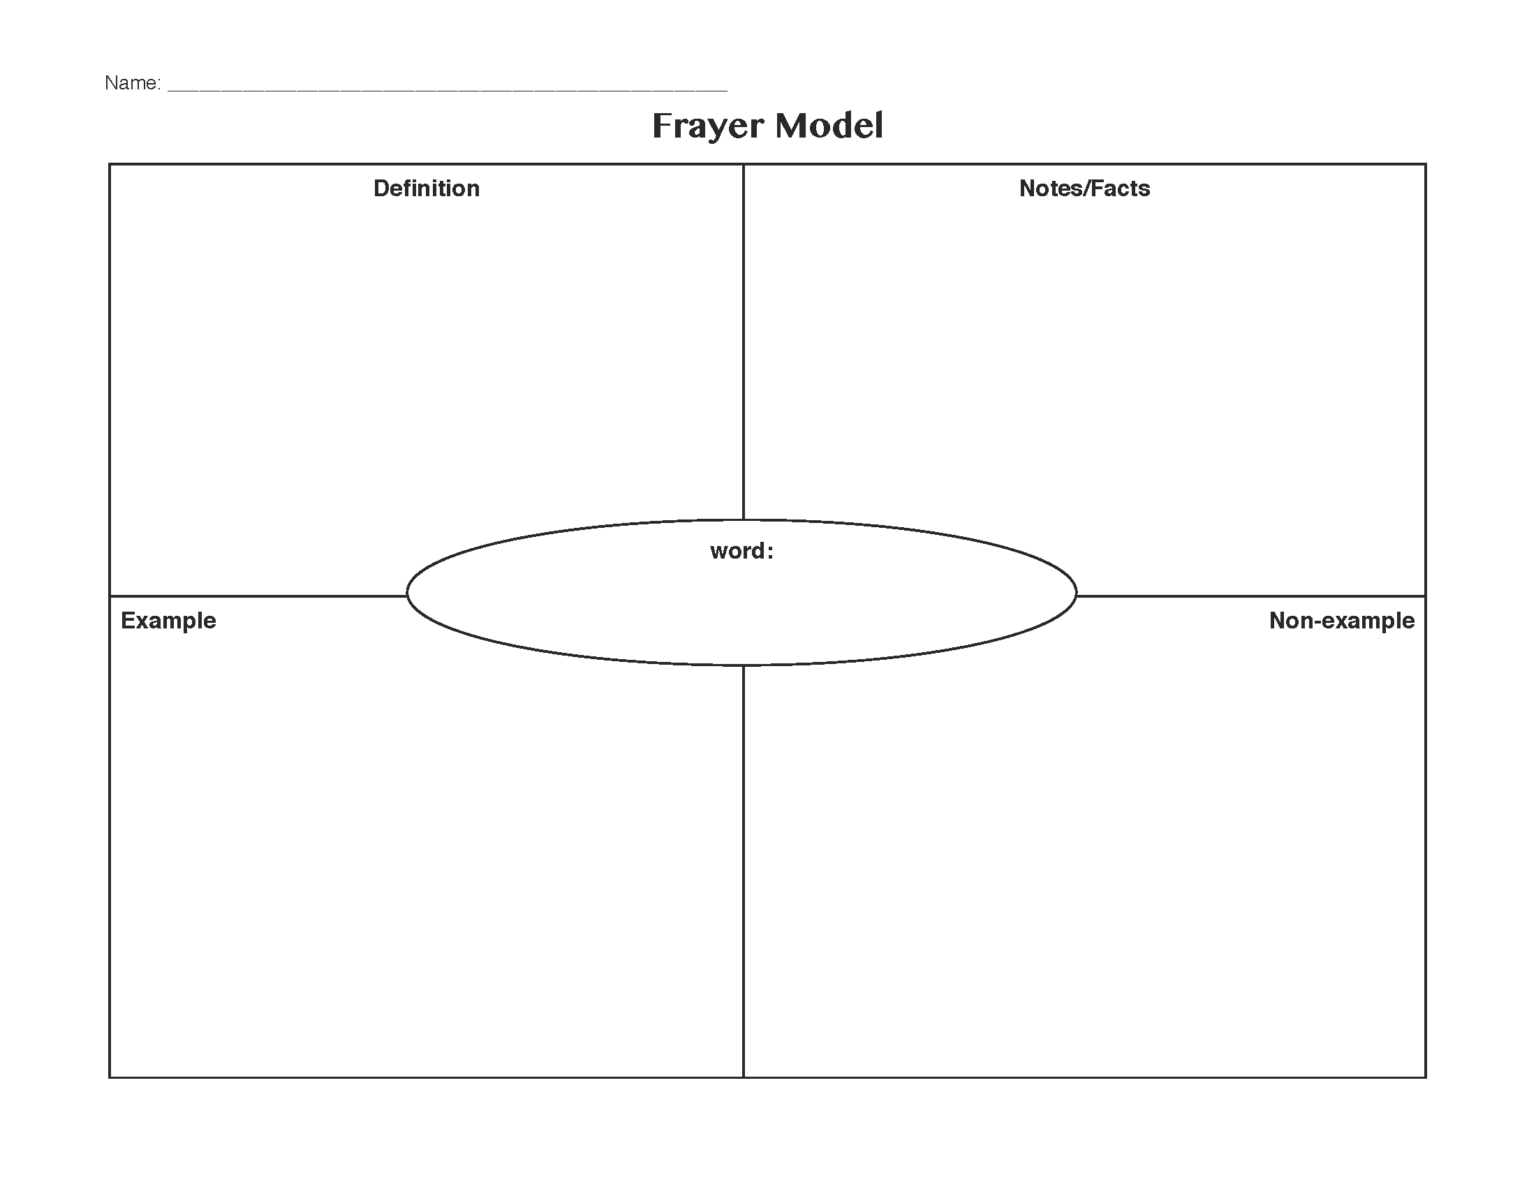 blank-frayer-model-template